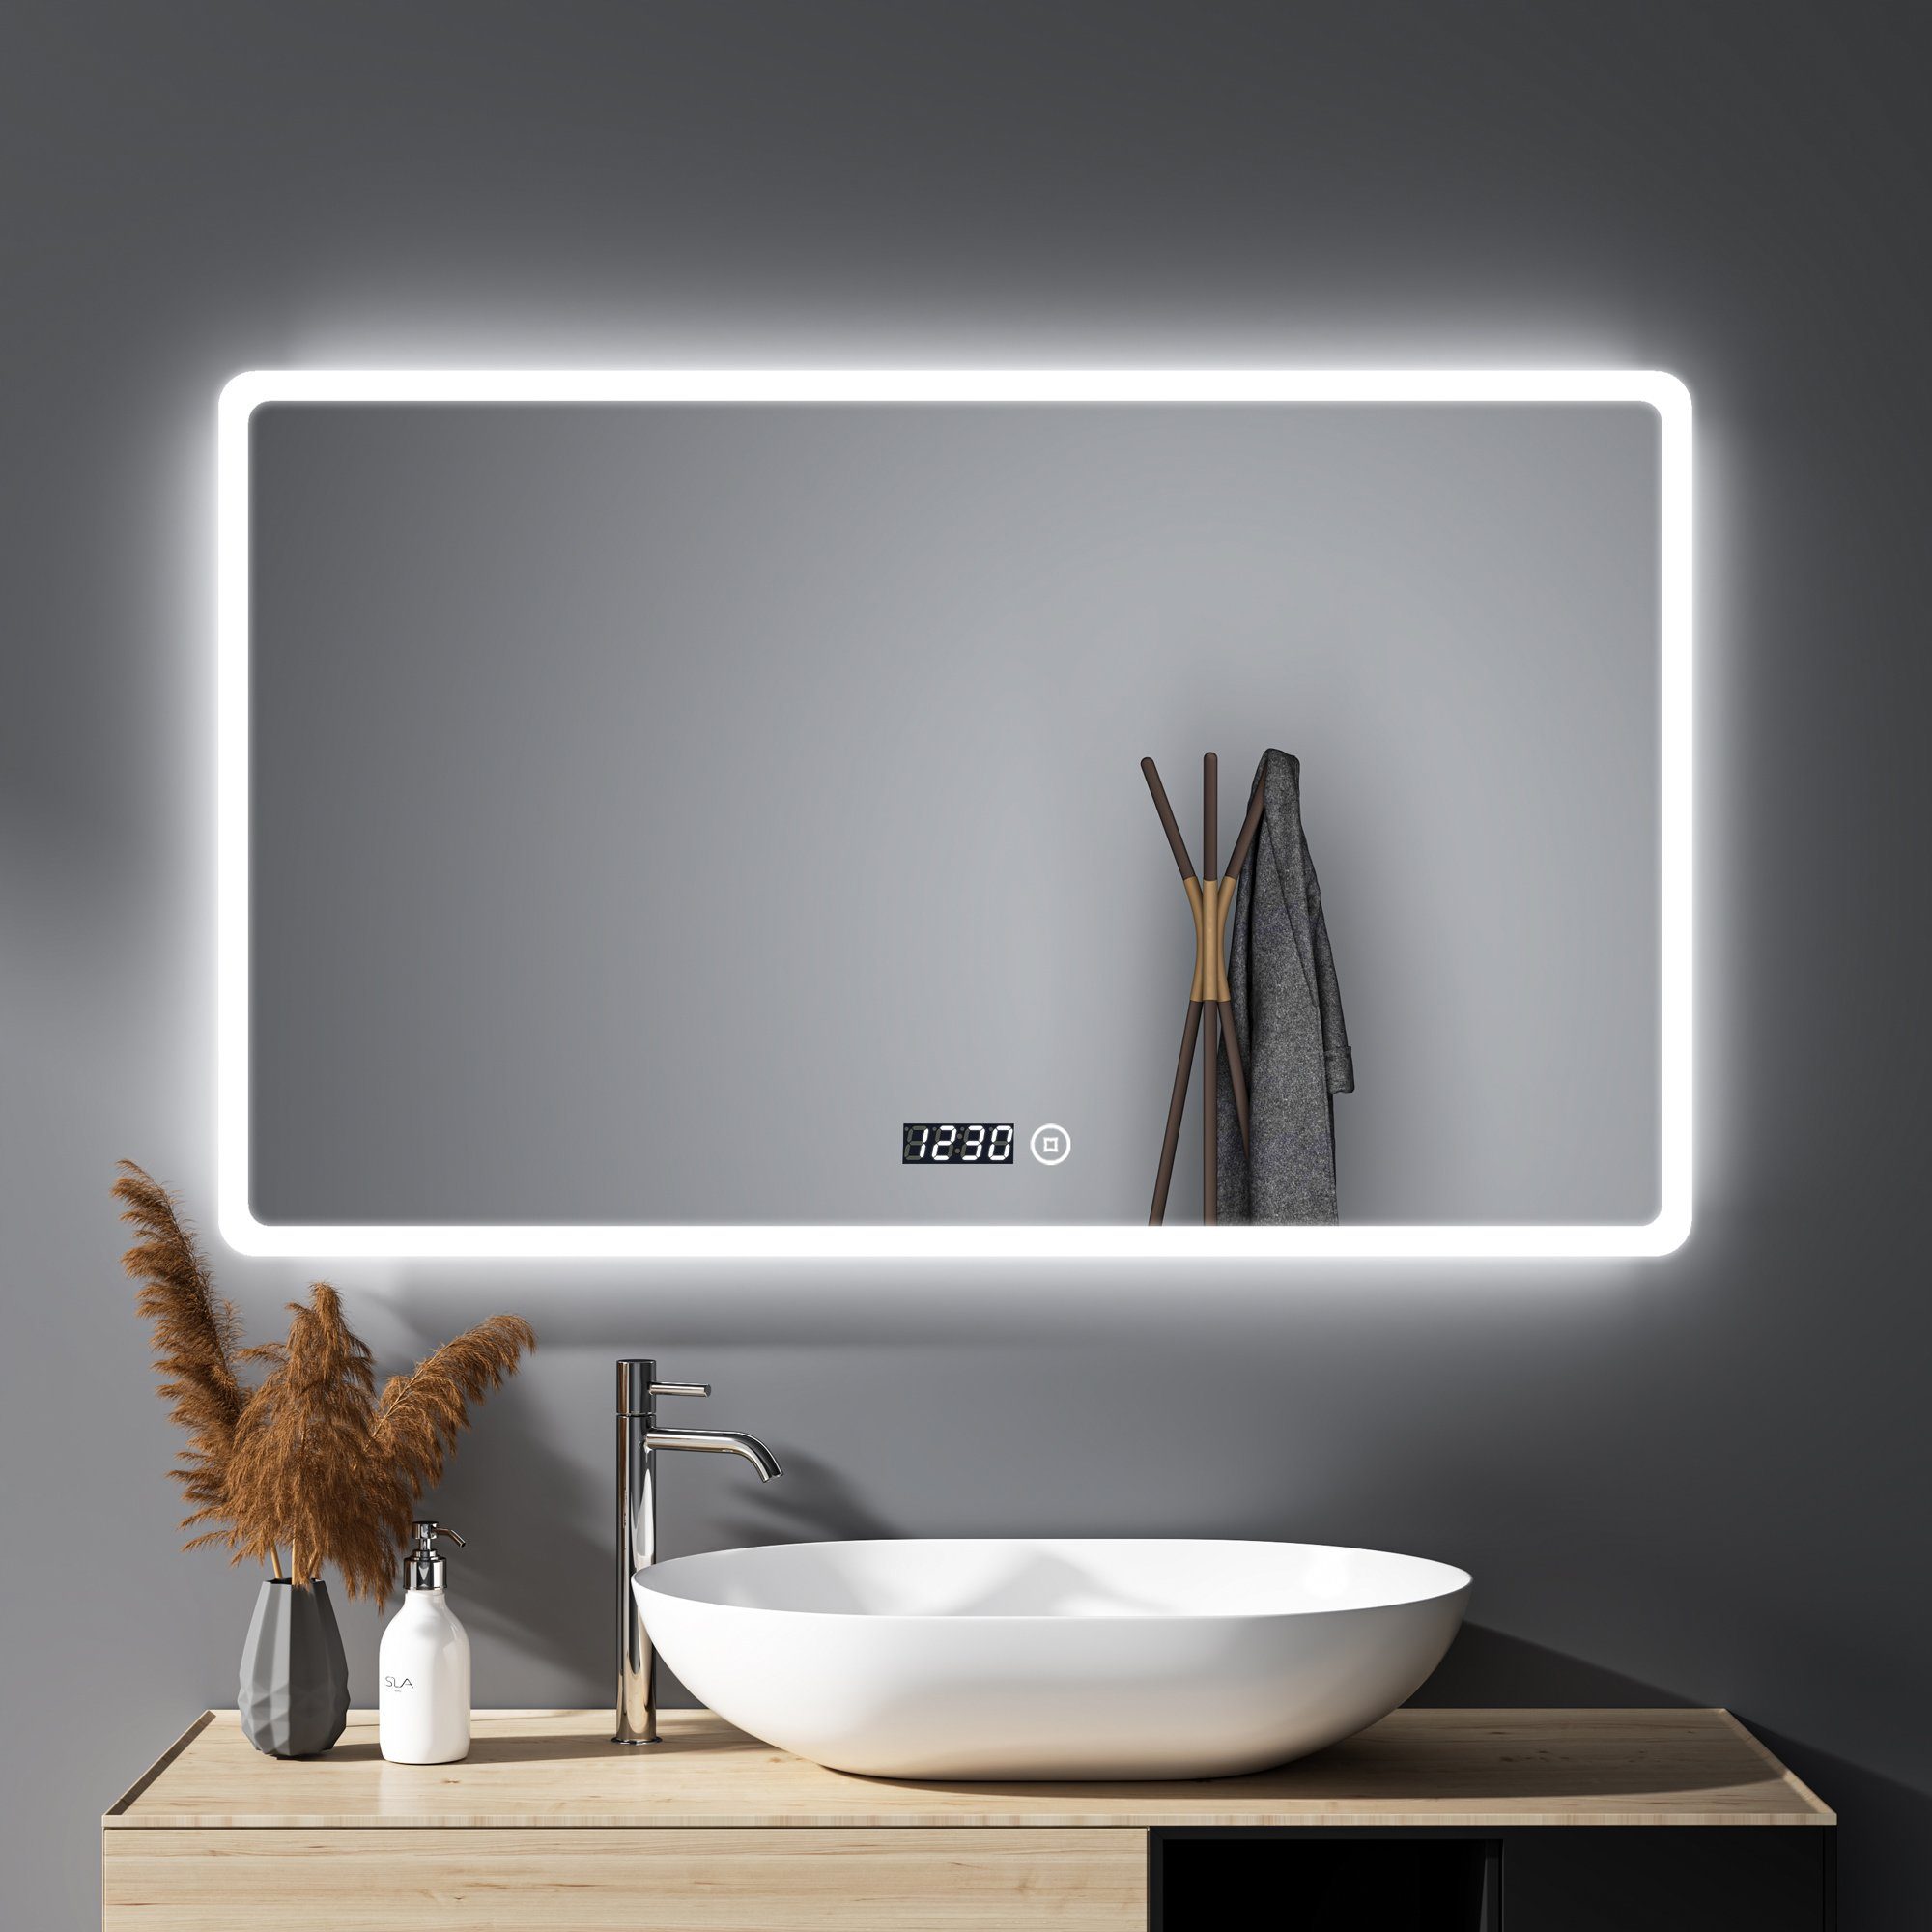 WDWRITTI Badspiegel Badezimmerspiegel Led 100x60 cm Uhr 3Farben Helligkeit dimmbar Memory (Wandspiegel mit Beleuchtung Spiegel Bad Led, Touch, Wandschalter), Speicherfunktion, energiesparender, IP44